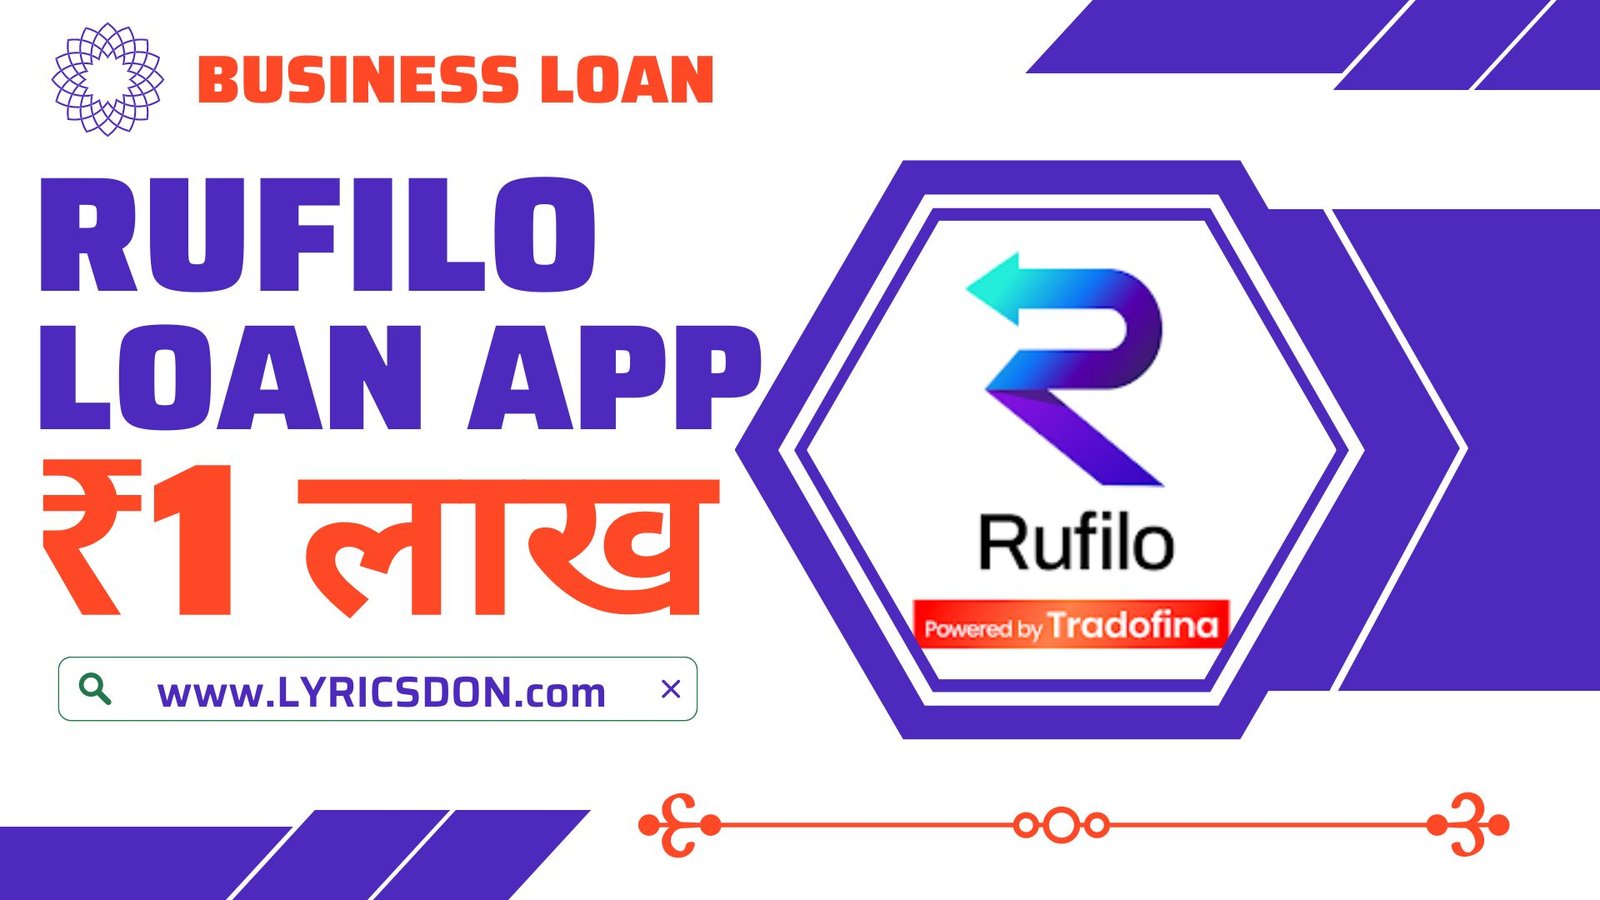 Rufilo Business Loan App Loan Amount